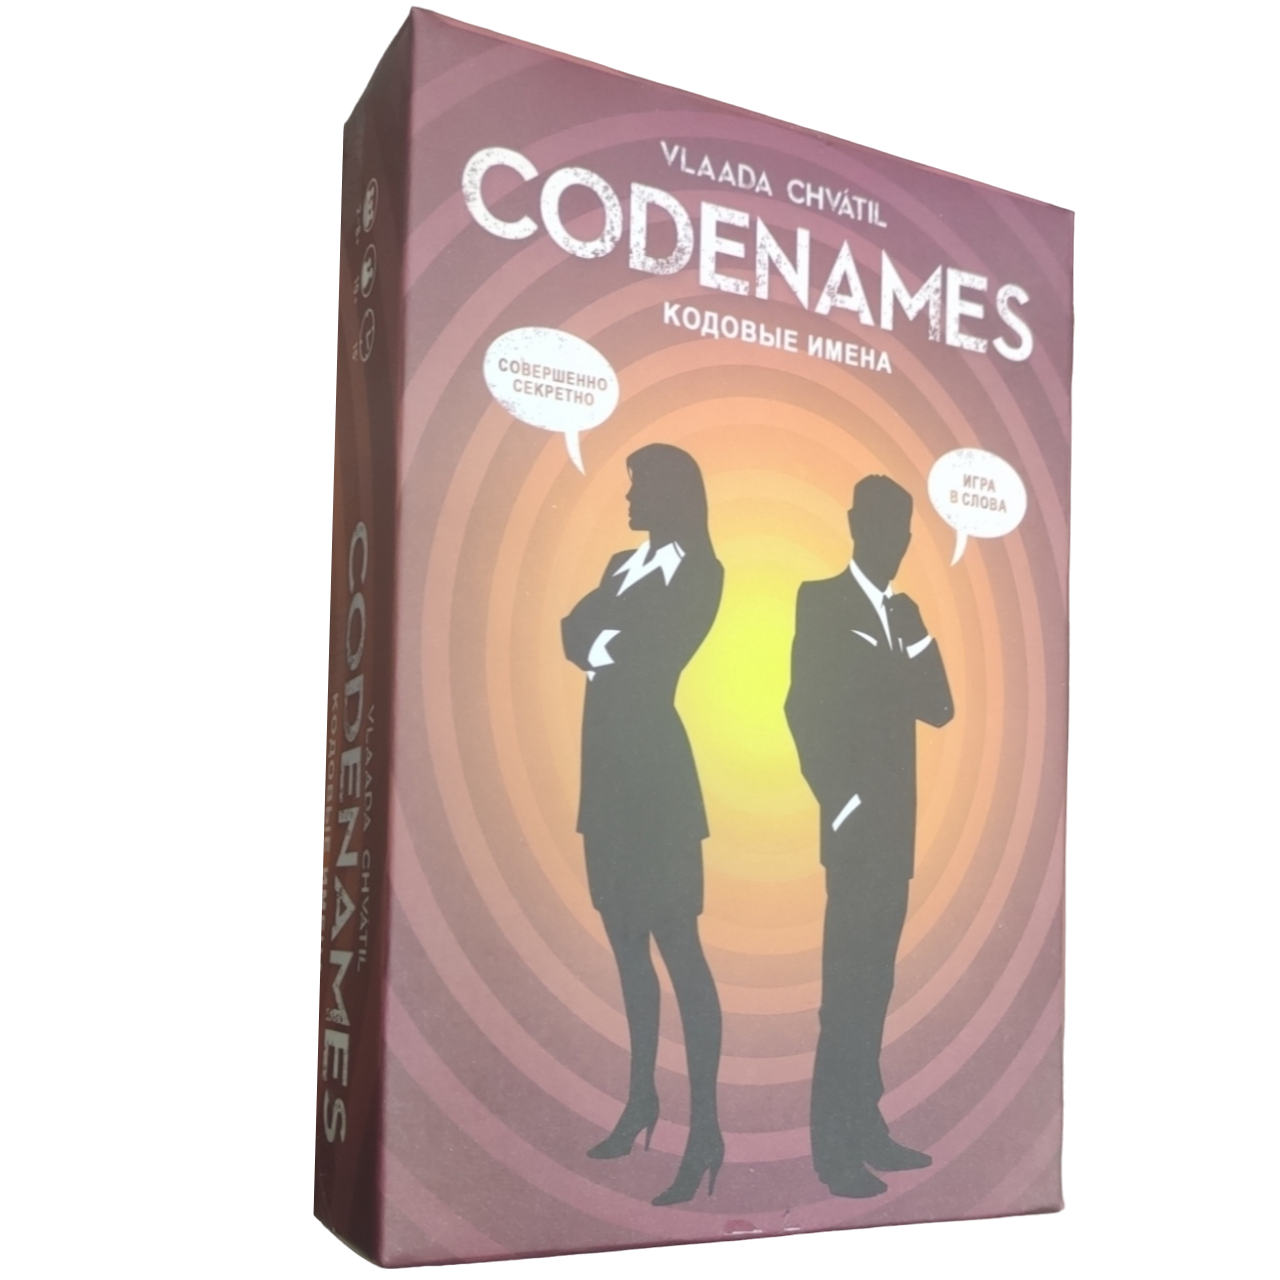 Настольная игра Коднеймс, "Codenames", Кодовые имена